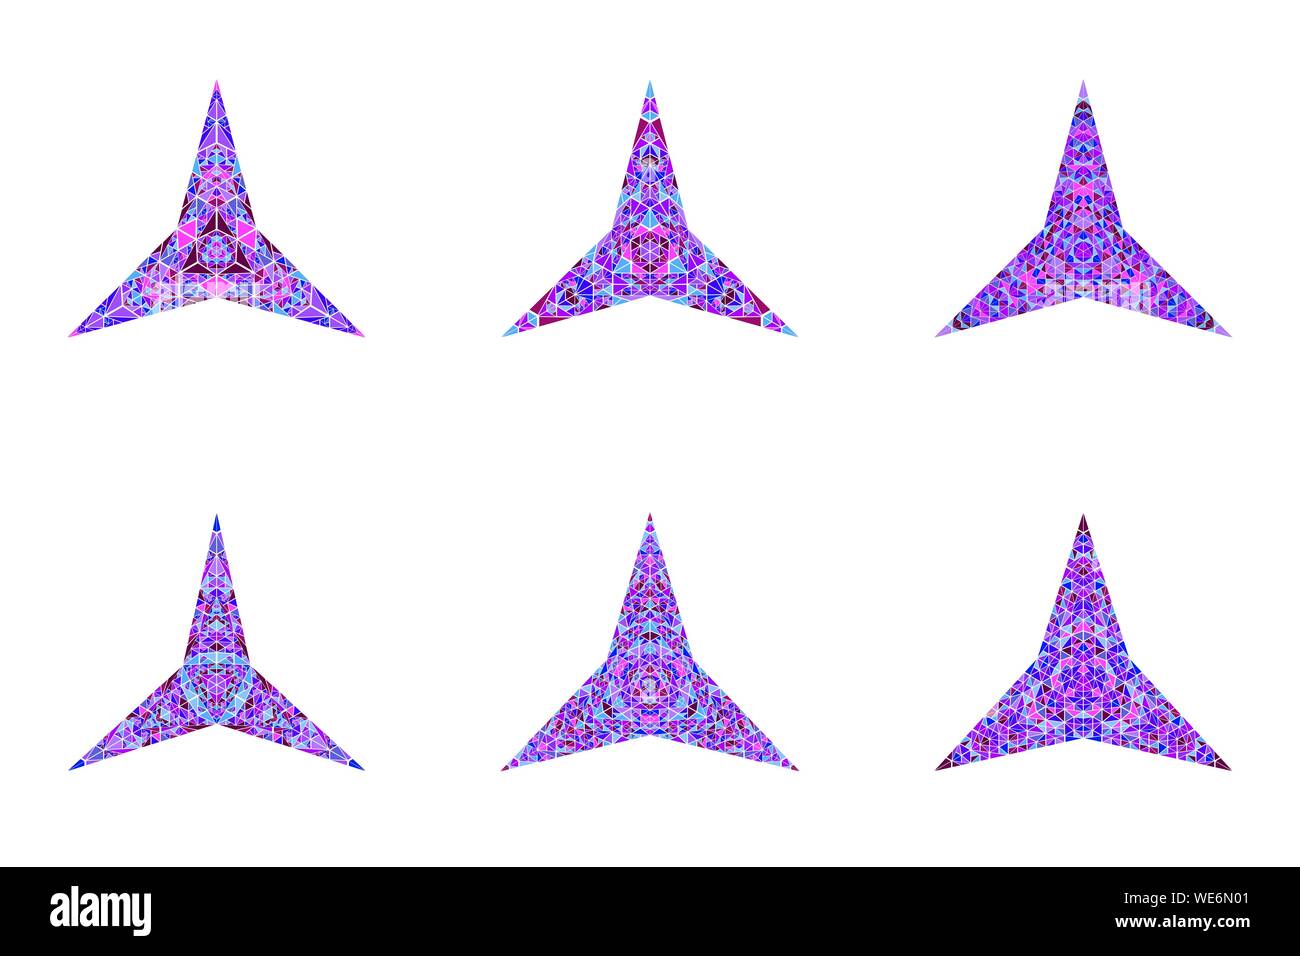 Isolierte Mosaikfliesen ornament Star Logo Vorlage Sammlung - geometrische abstrakte Vektor Elemente Stock Vektor